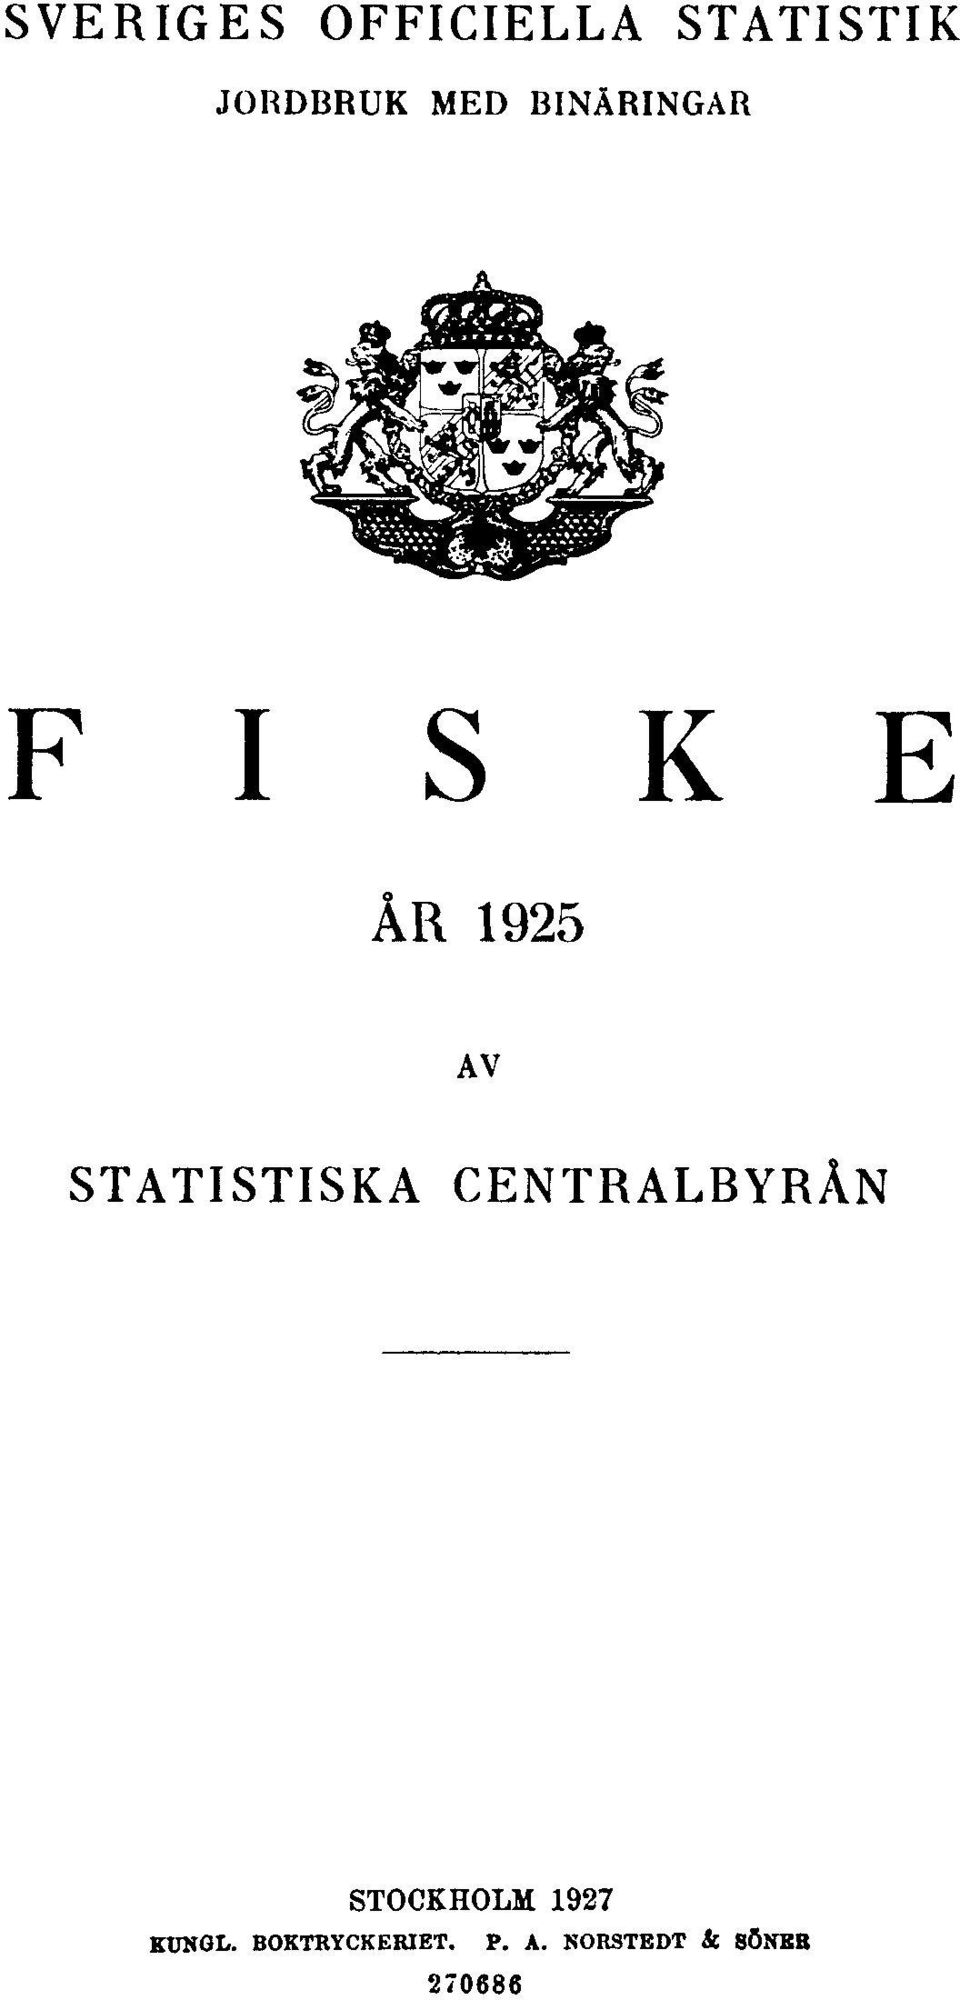 STATISTISKA CENTRALBYRÅN STOCKHOLM 1927